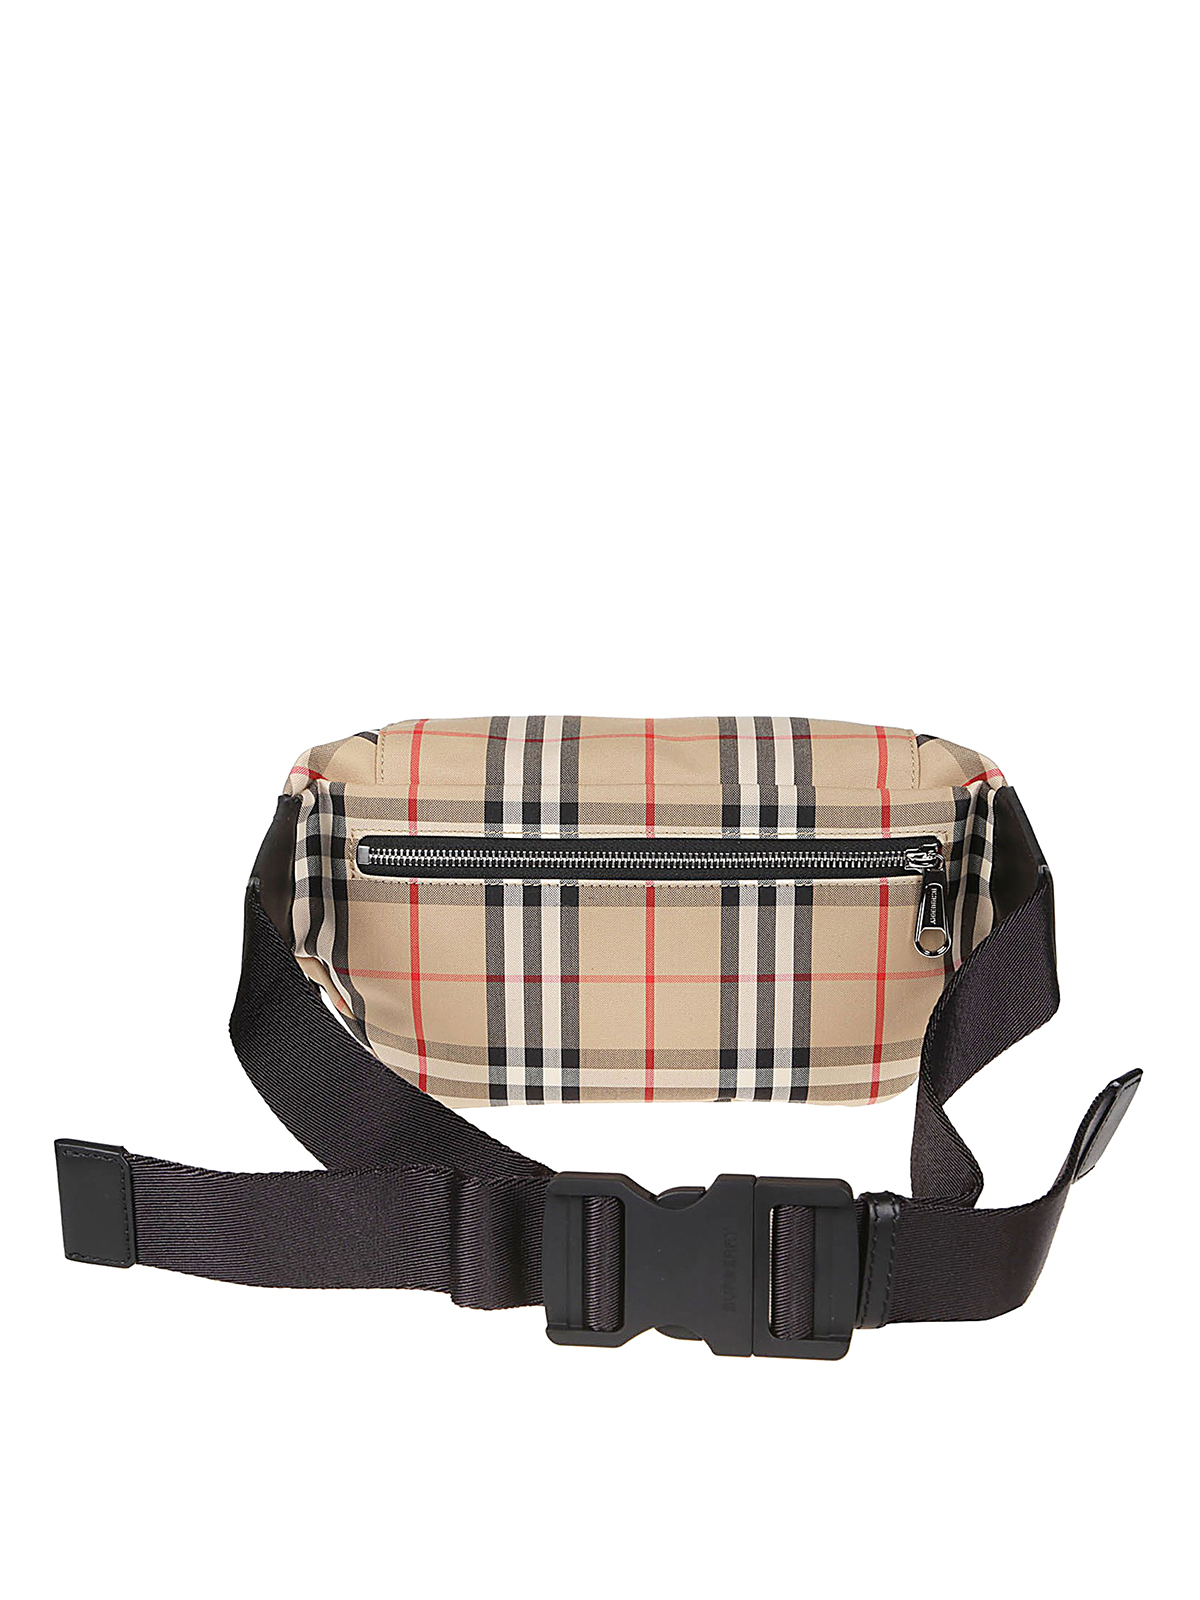 Burberry Sonny Leather Check Belt Bag  Harrods US